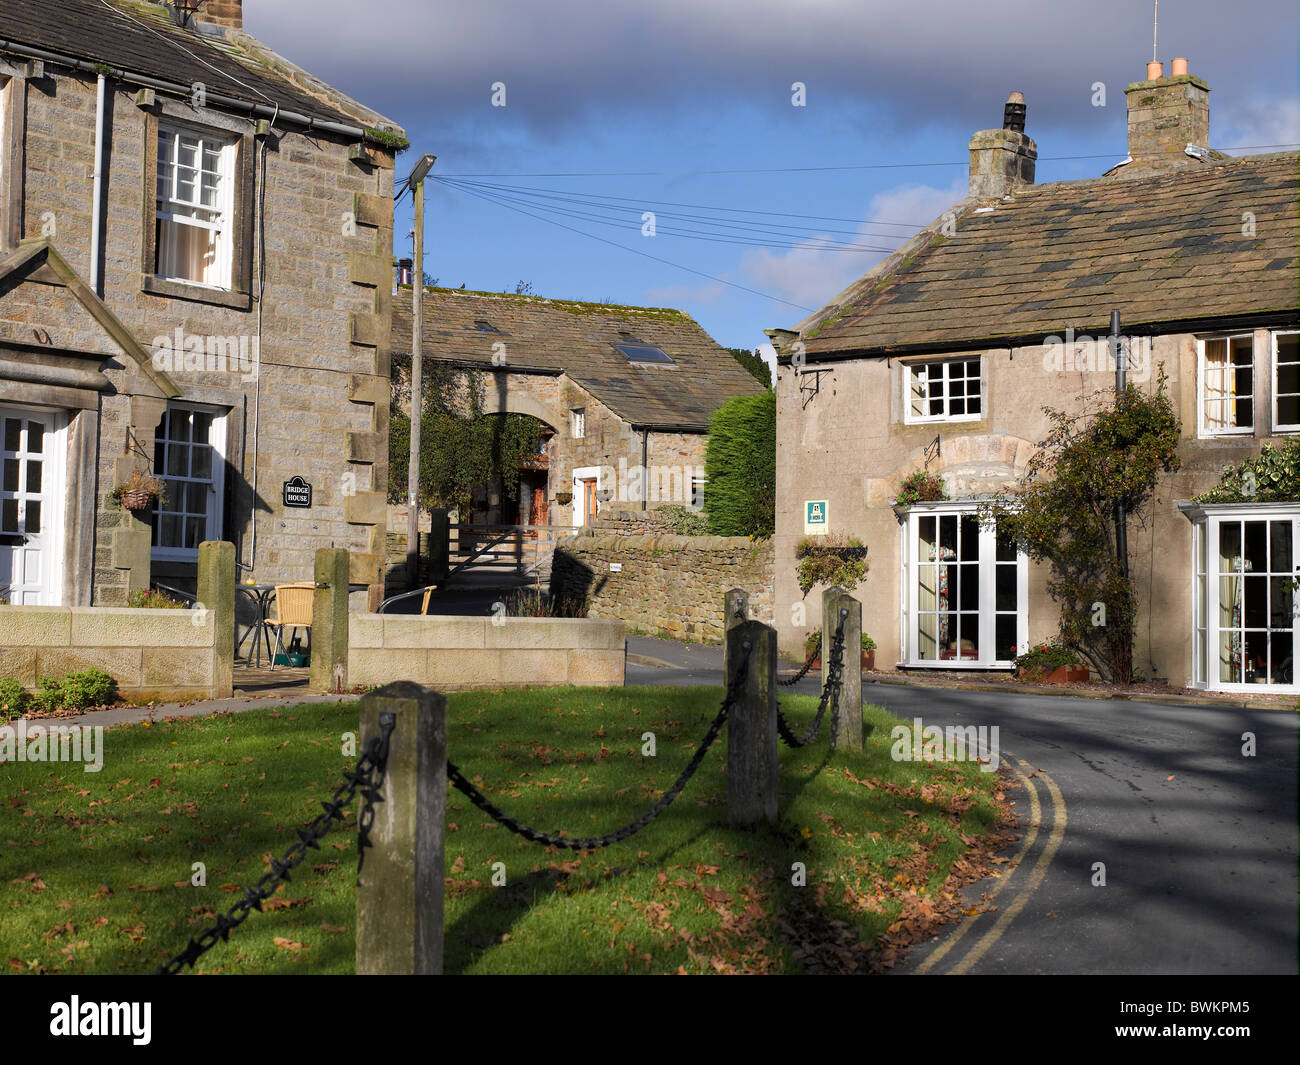 Häuser Ferienhäuser in Burnsall Dorf im Herbst Lower Wharfedale North Yorkshire Dales England Vereinigtes Königreich GB Großbritannien Stockfoto